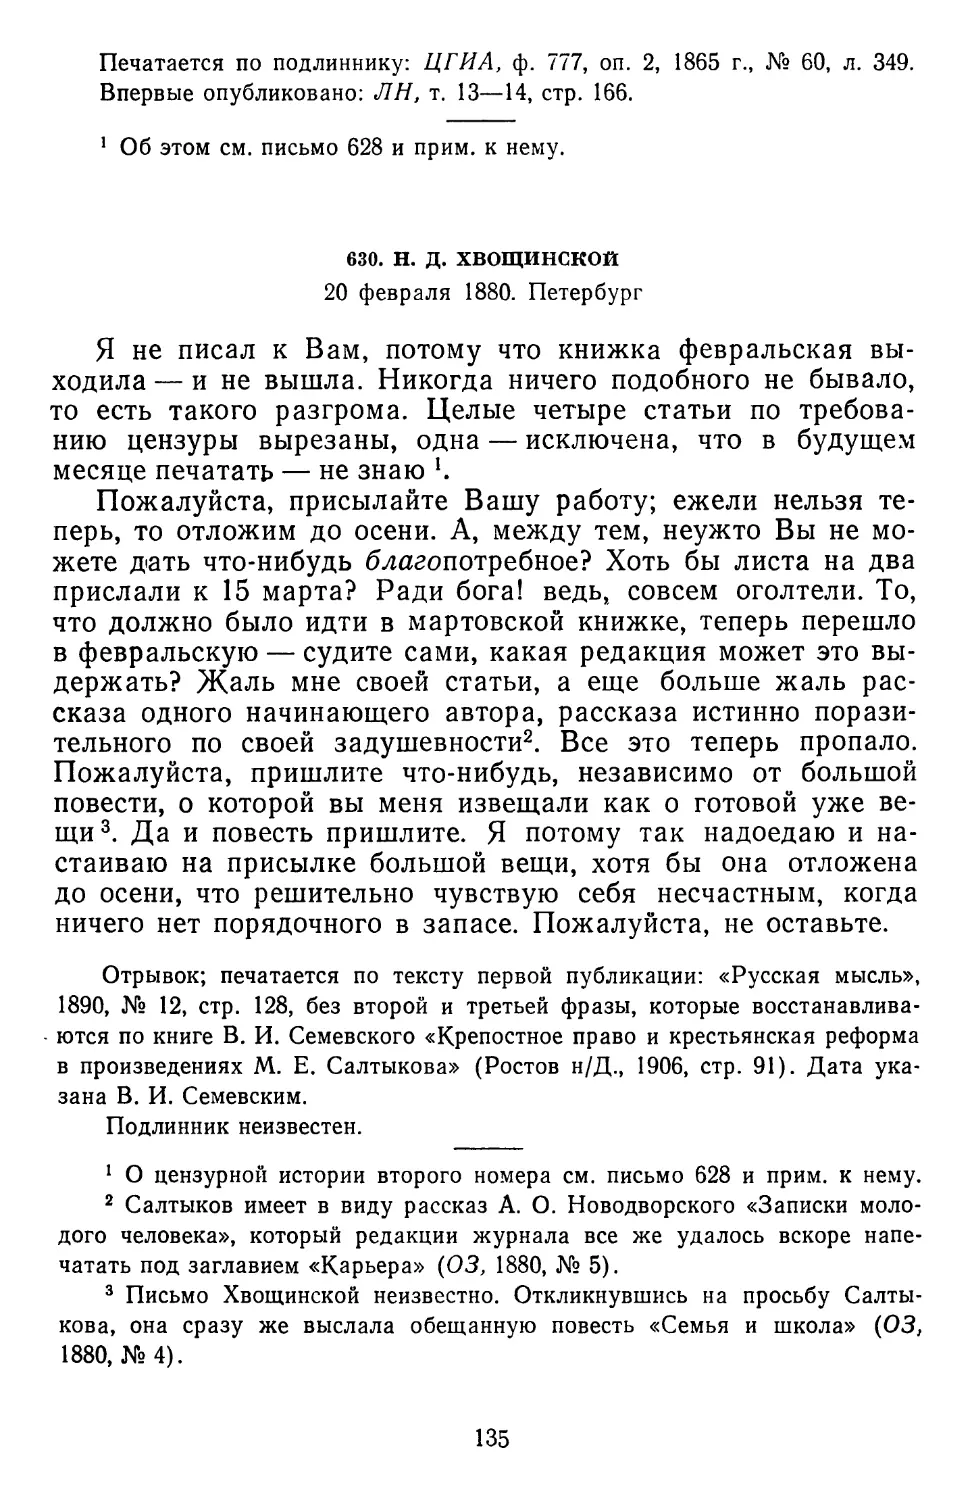 630.Н.Д.Хвощинской. 20 февраля 1880. Петербург